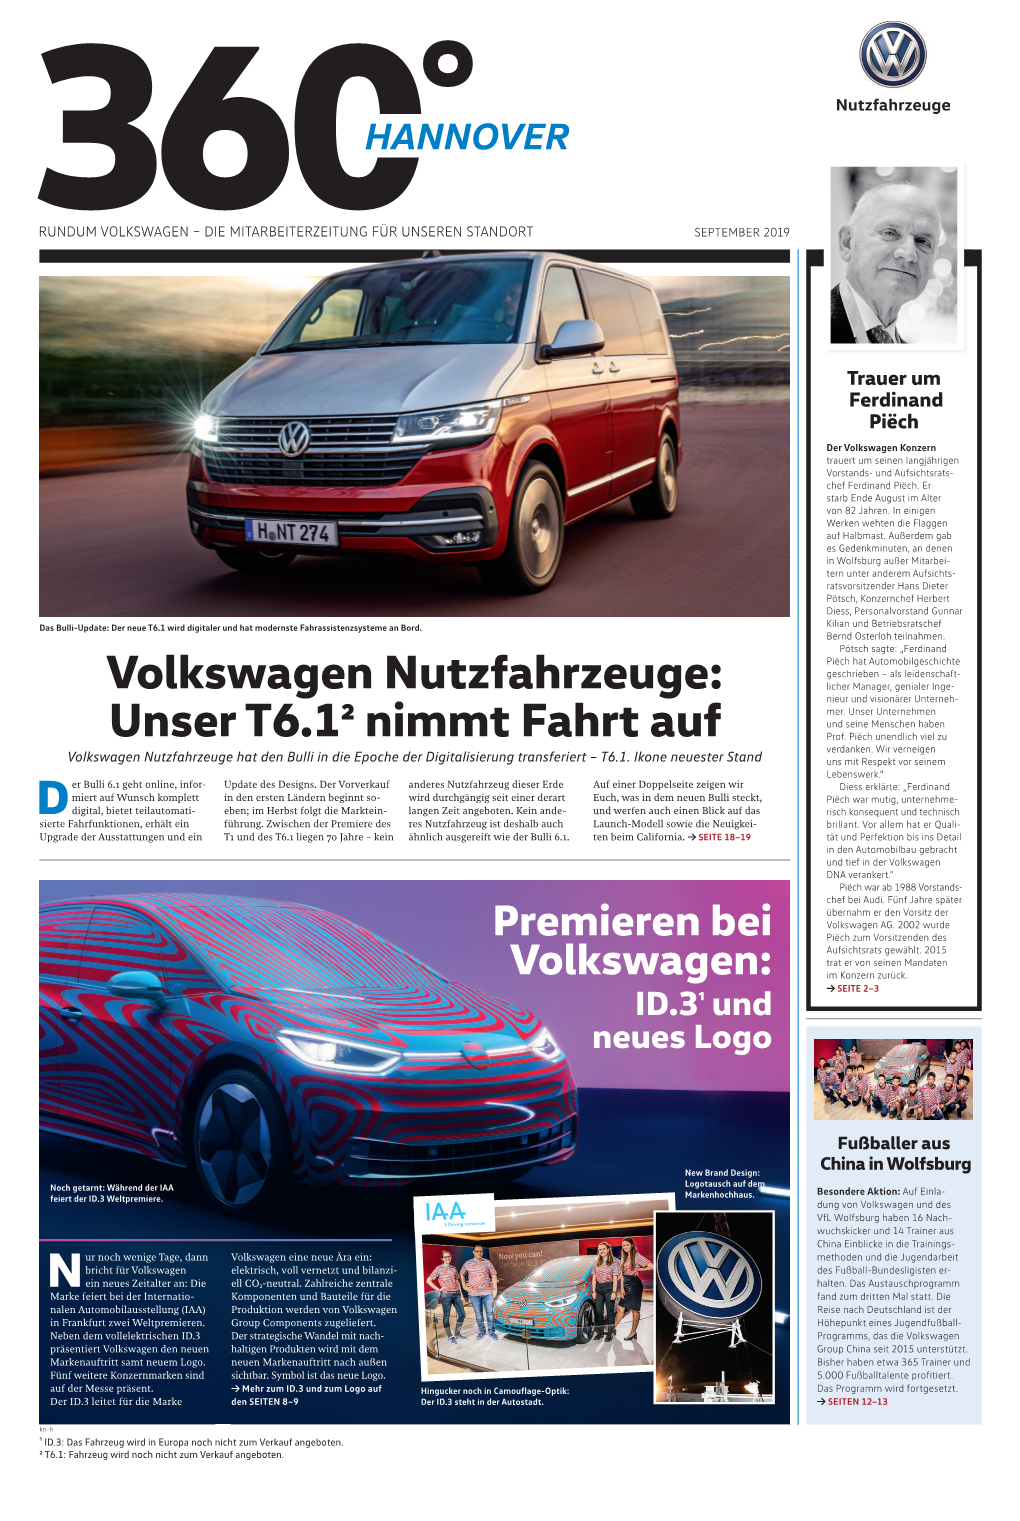 Volkswagen Nutzfahrzeuge: Unser T6.12 Nimmt Fahrt